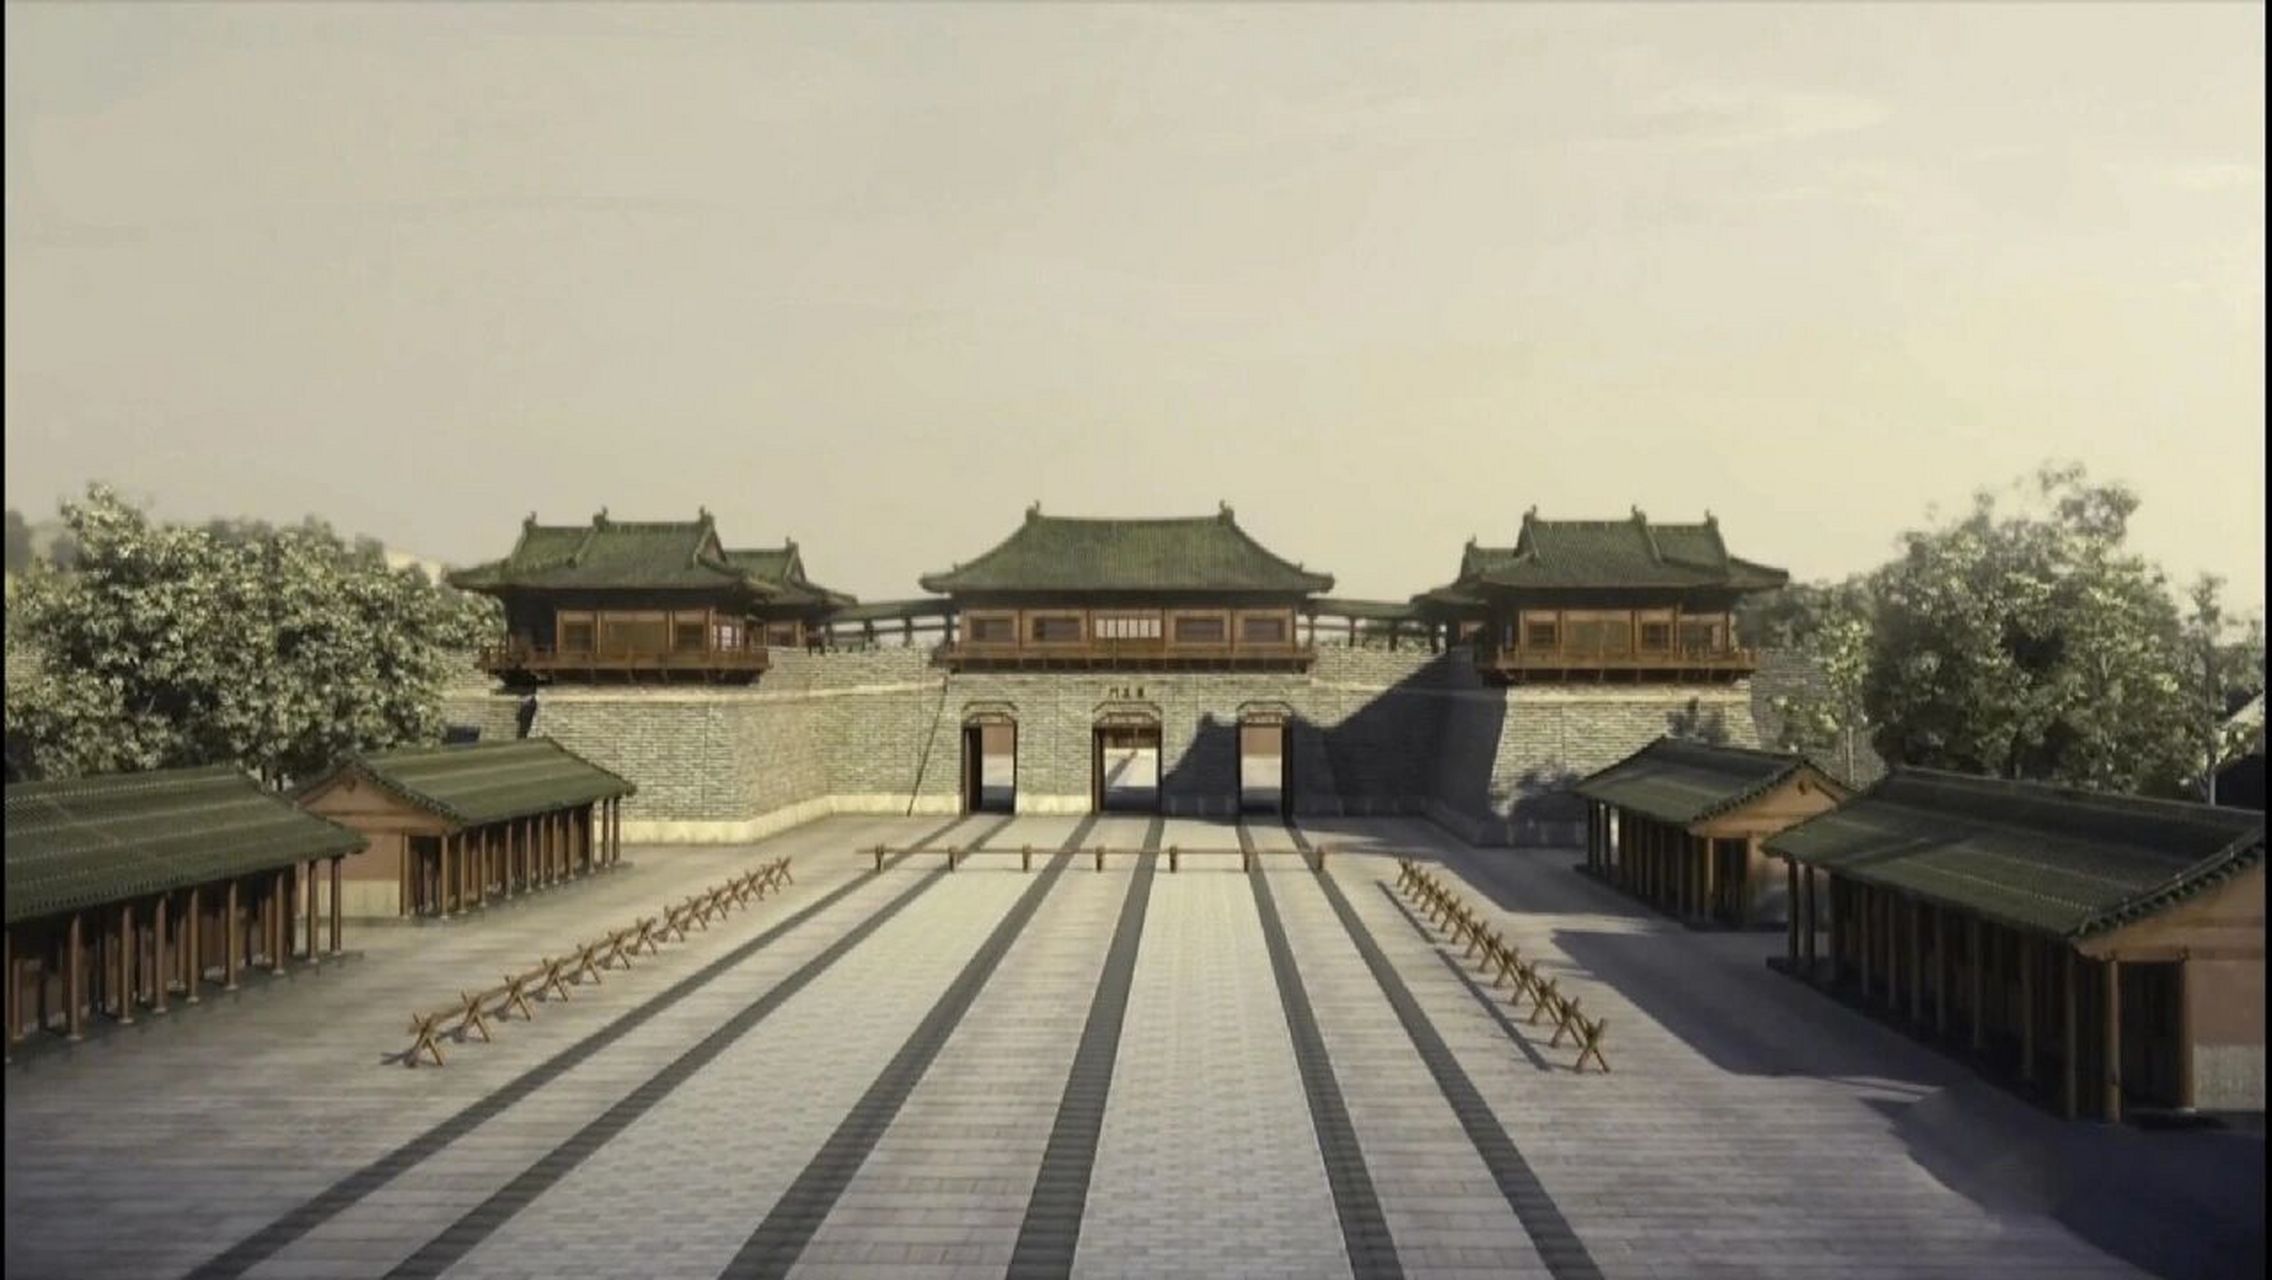 古建筑文化:中国古代著名宫殿之南宋皇宫 南宋皇城,南宋政权(公元1127